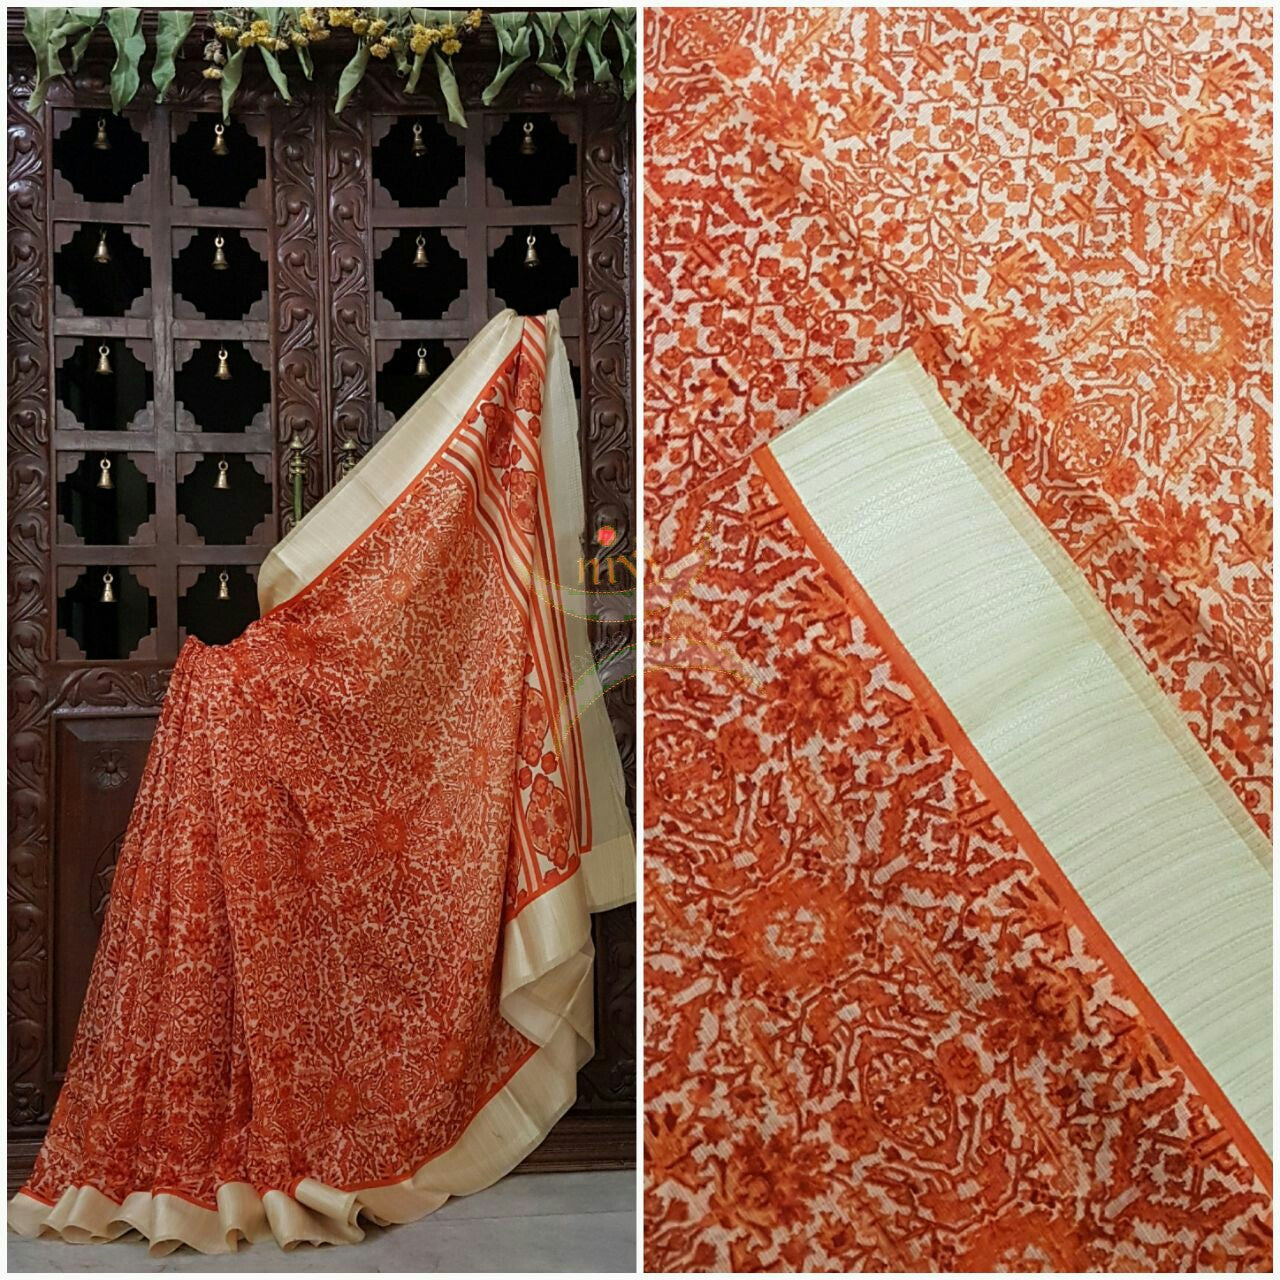 Orange with cream printed Kota Cotton saree with tissue finish cream border.